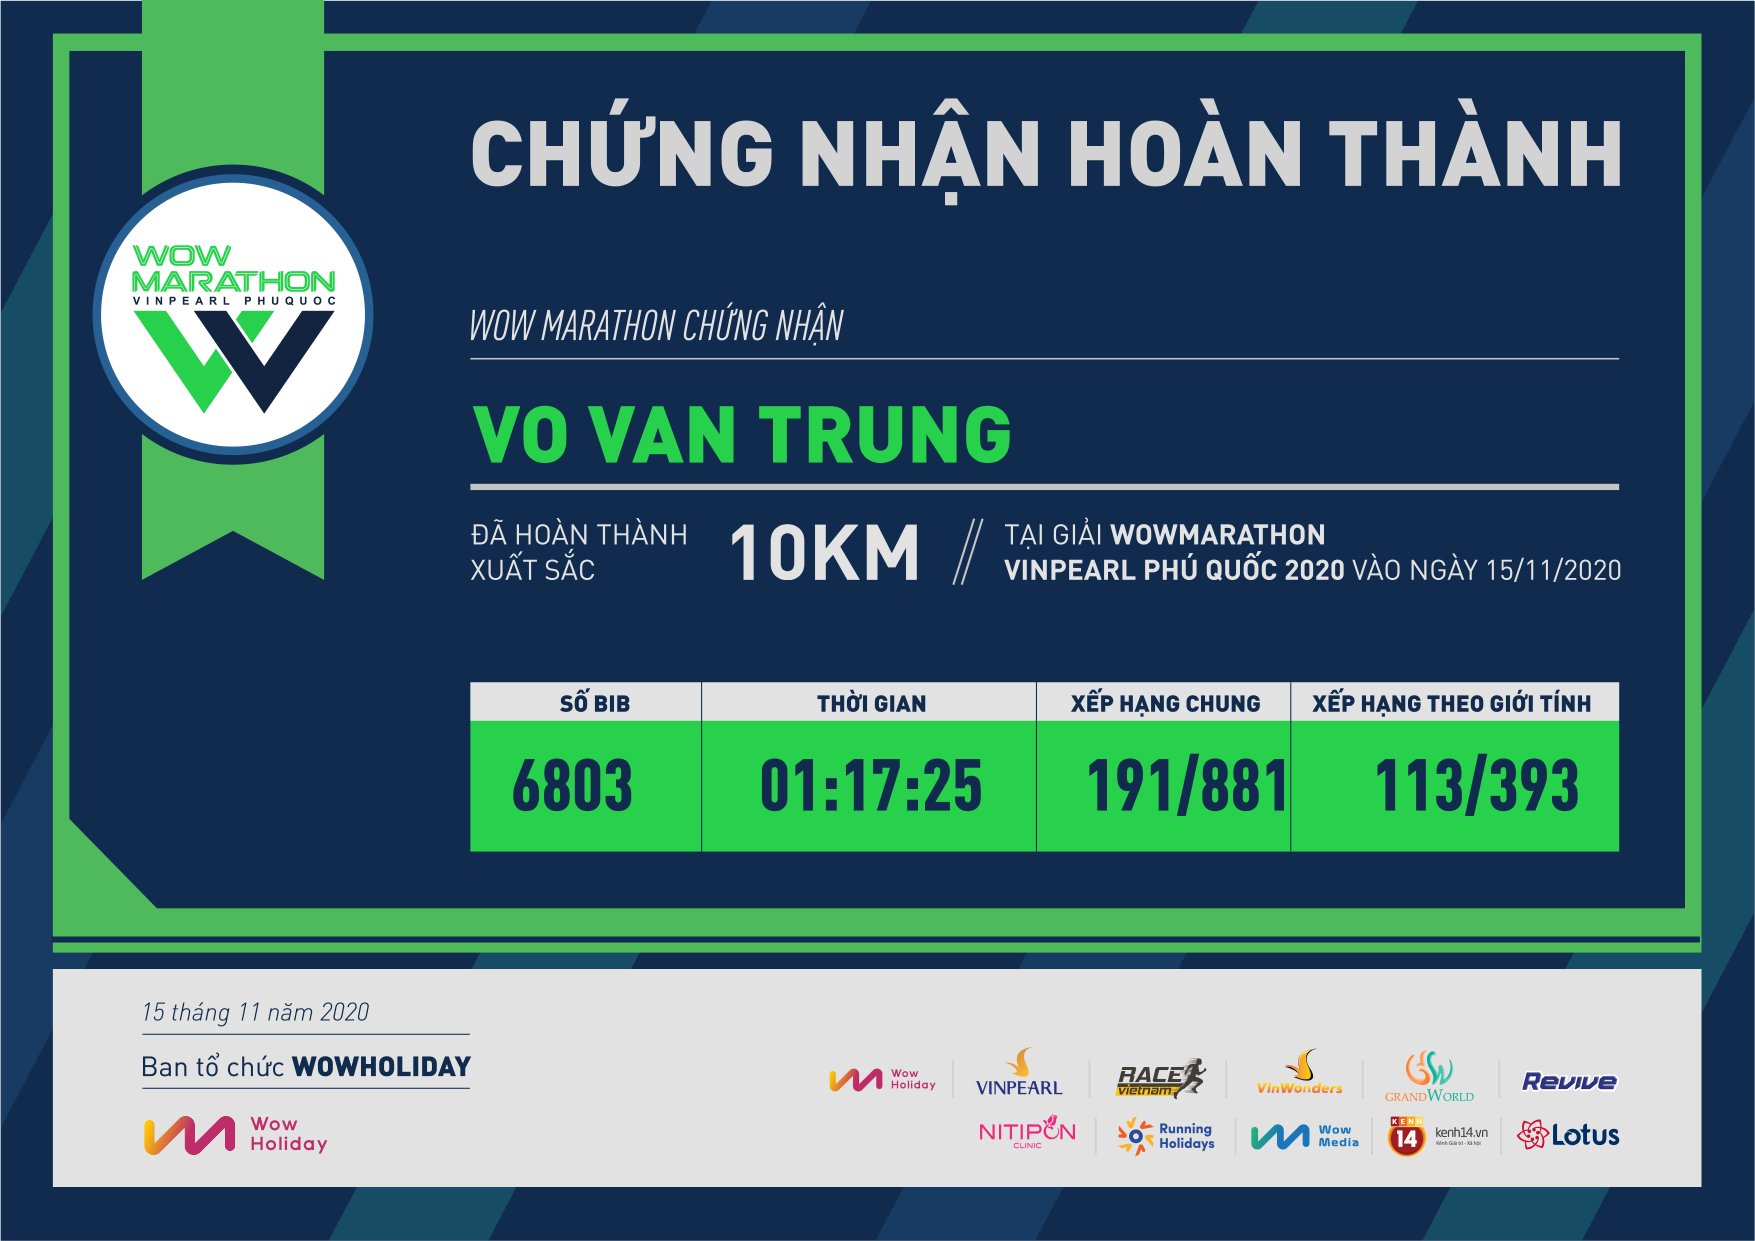 6803 - Vo Van Trung